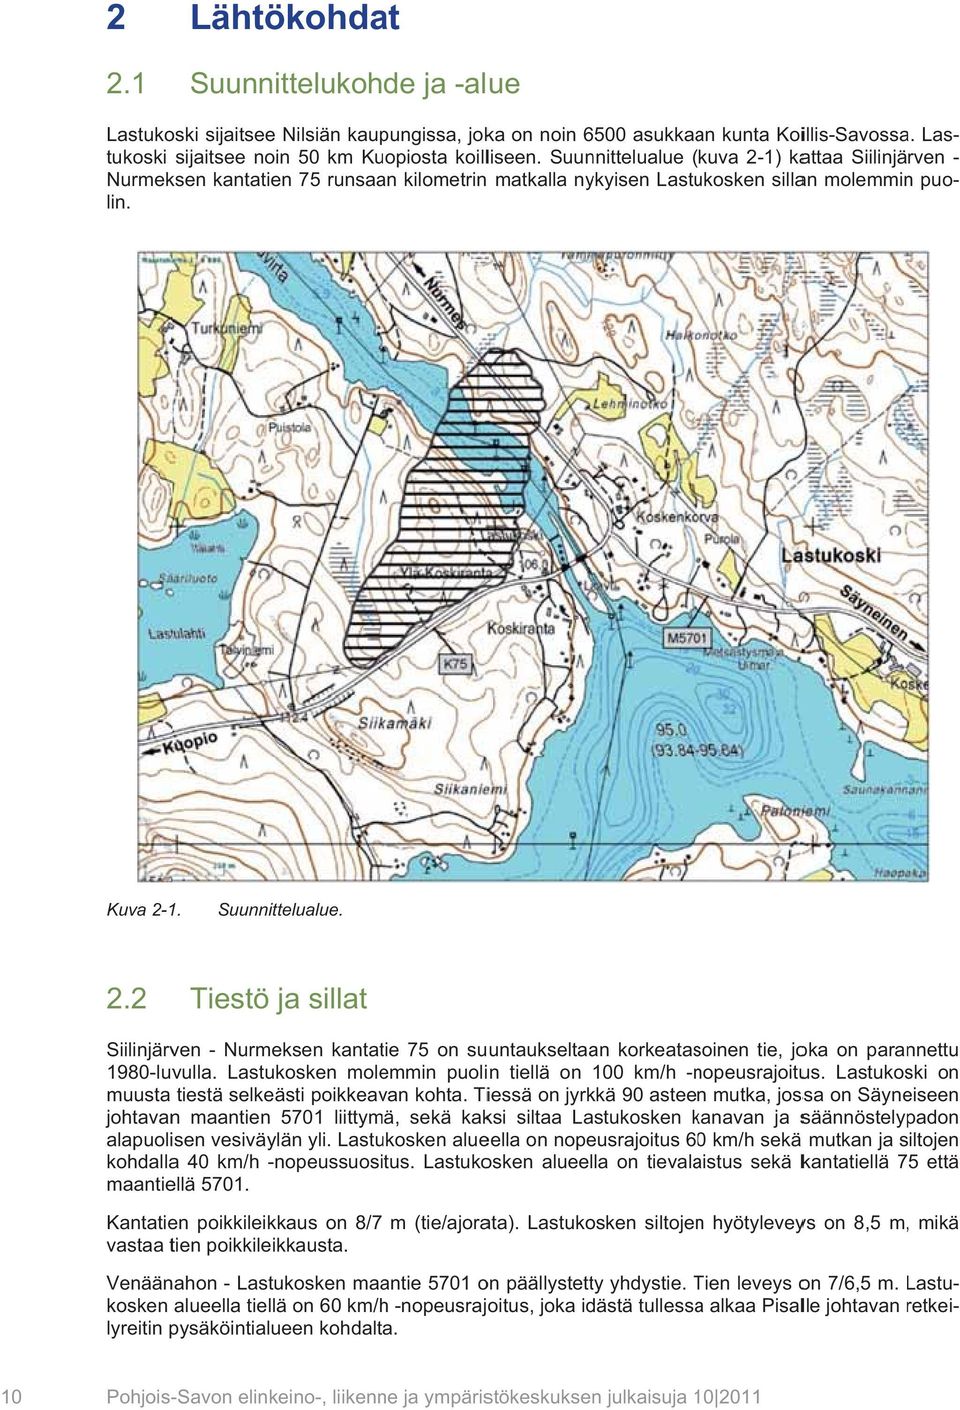 Suunnittelualue ( kuva 2-1) kattaa Siilinjärven Nurmeksen kantatien 75 runsaan kilometrin matkalla nykyisen Lastukosken sillan molemmin puo- lin.